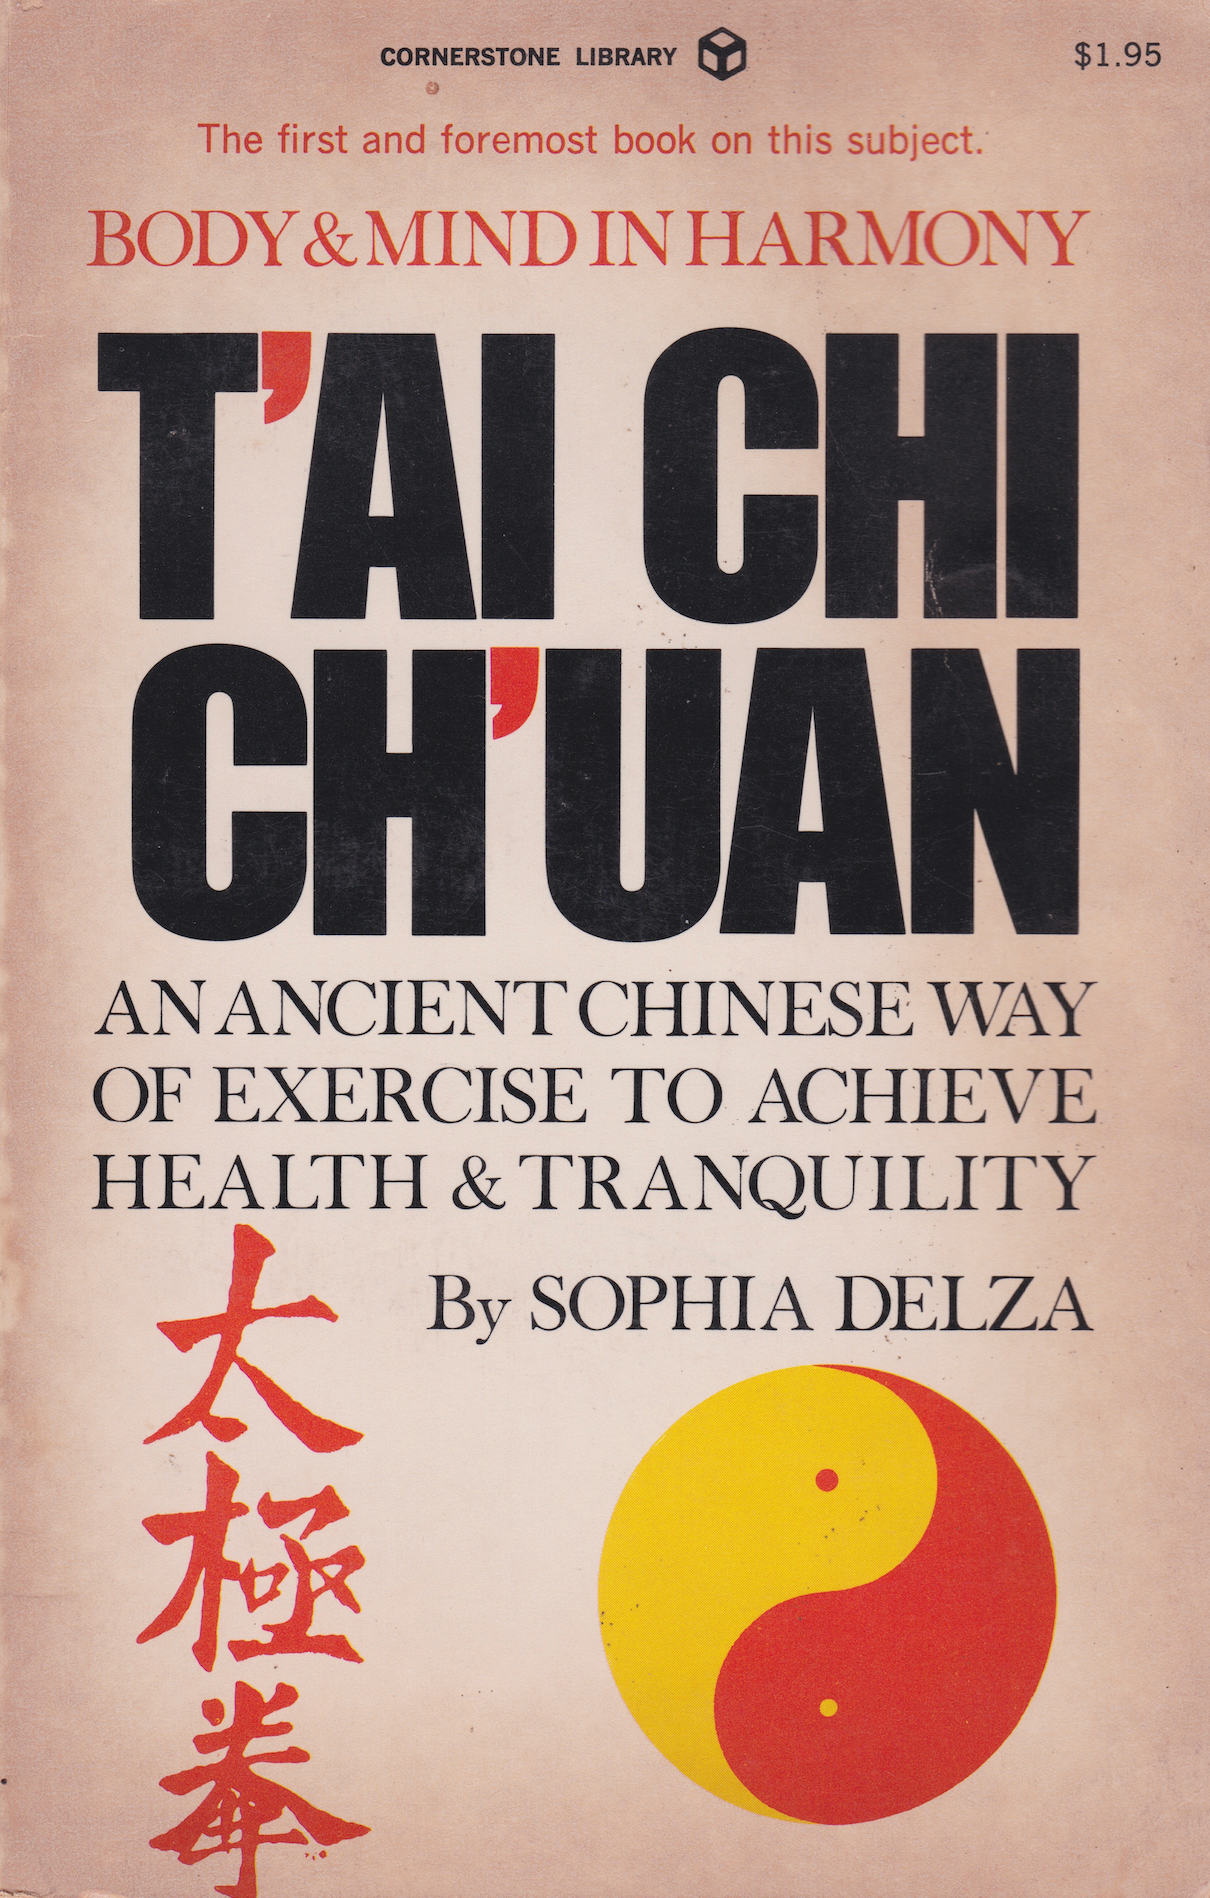 Libro Tai Chi Chuan Cuerpo y mente en armonía de Sophia Delza (tapa dura) (usado)